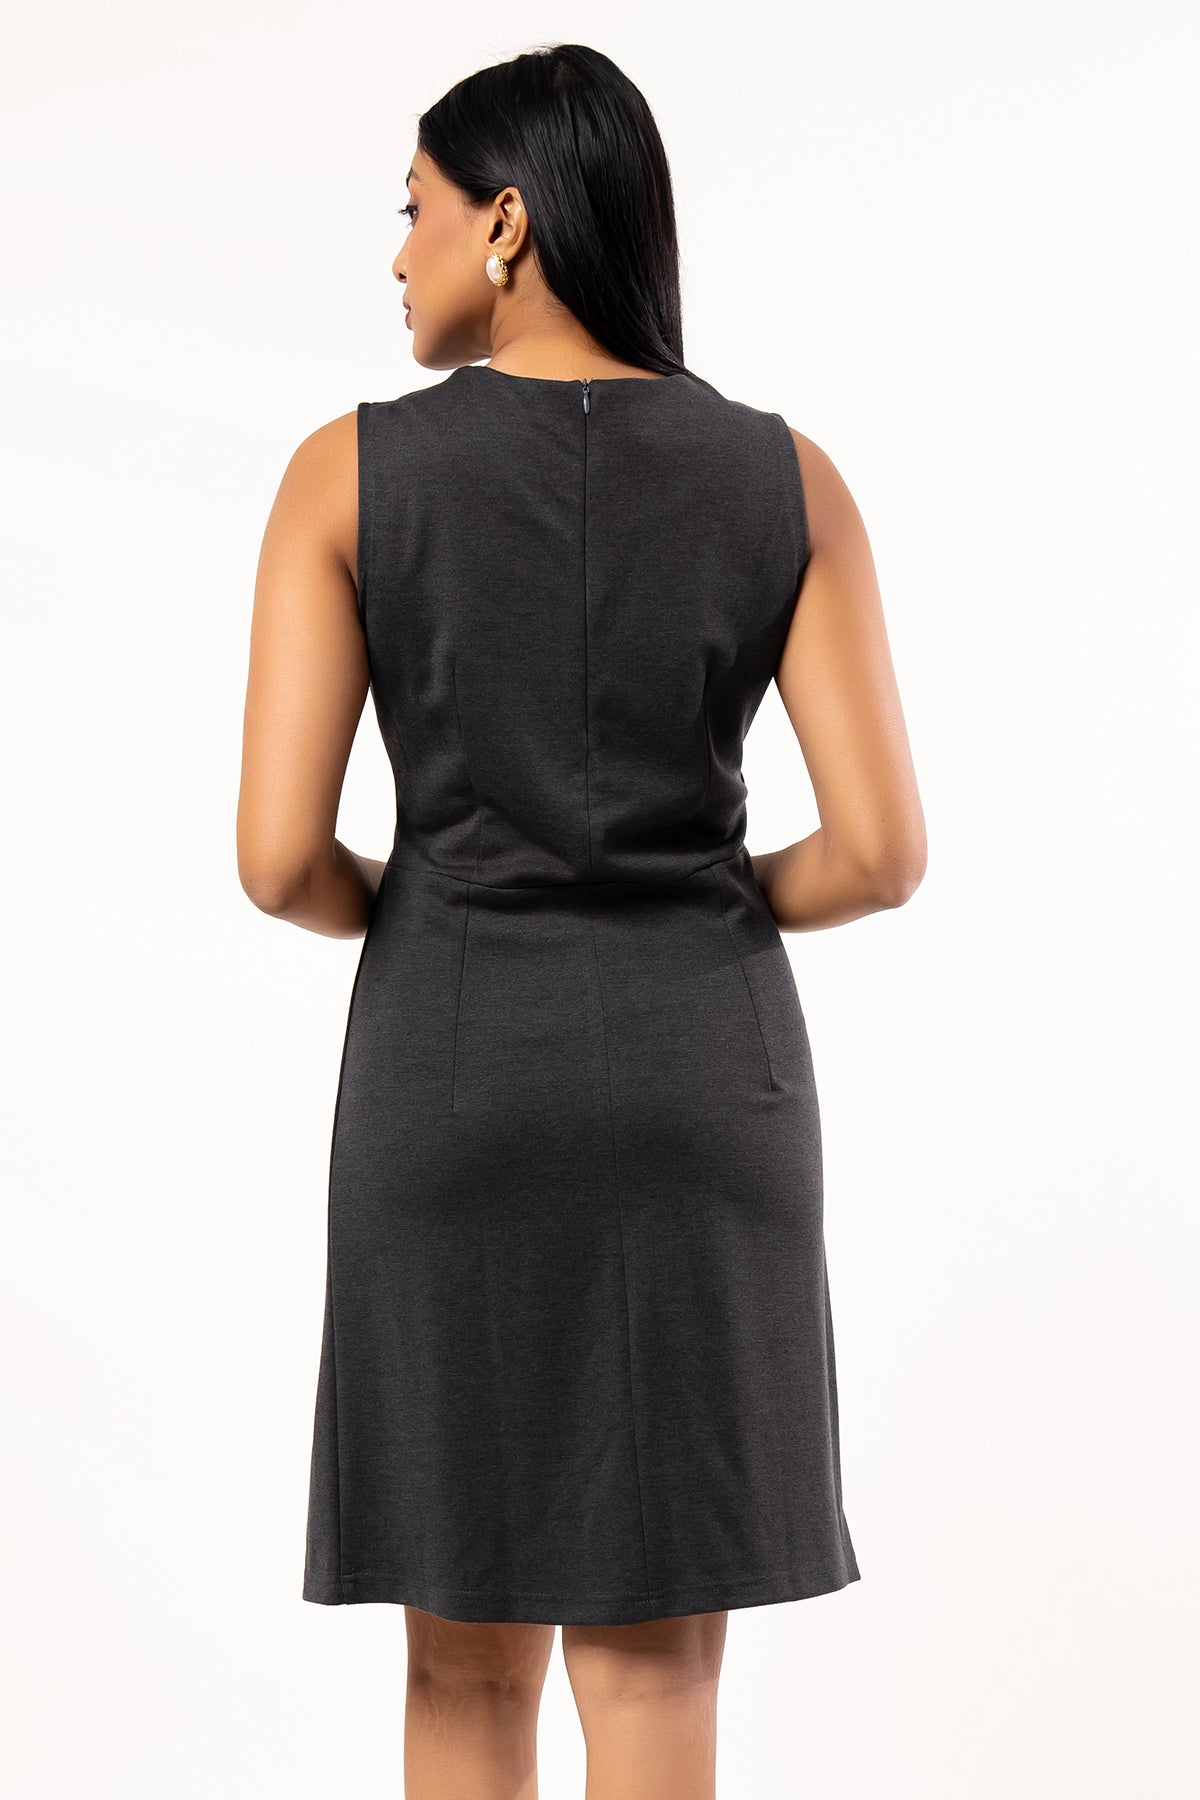 Envogue Women's Sleeve Less Office Dress